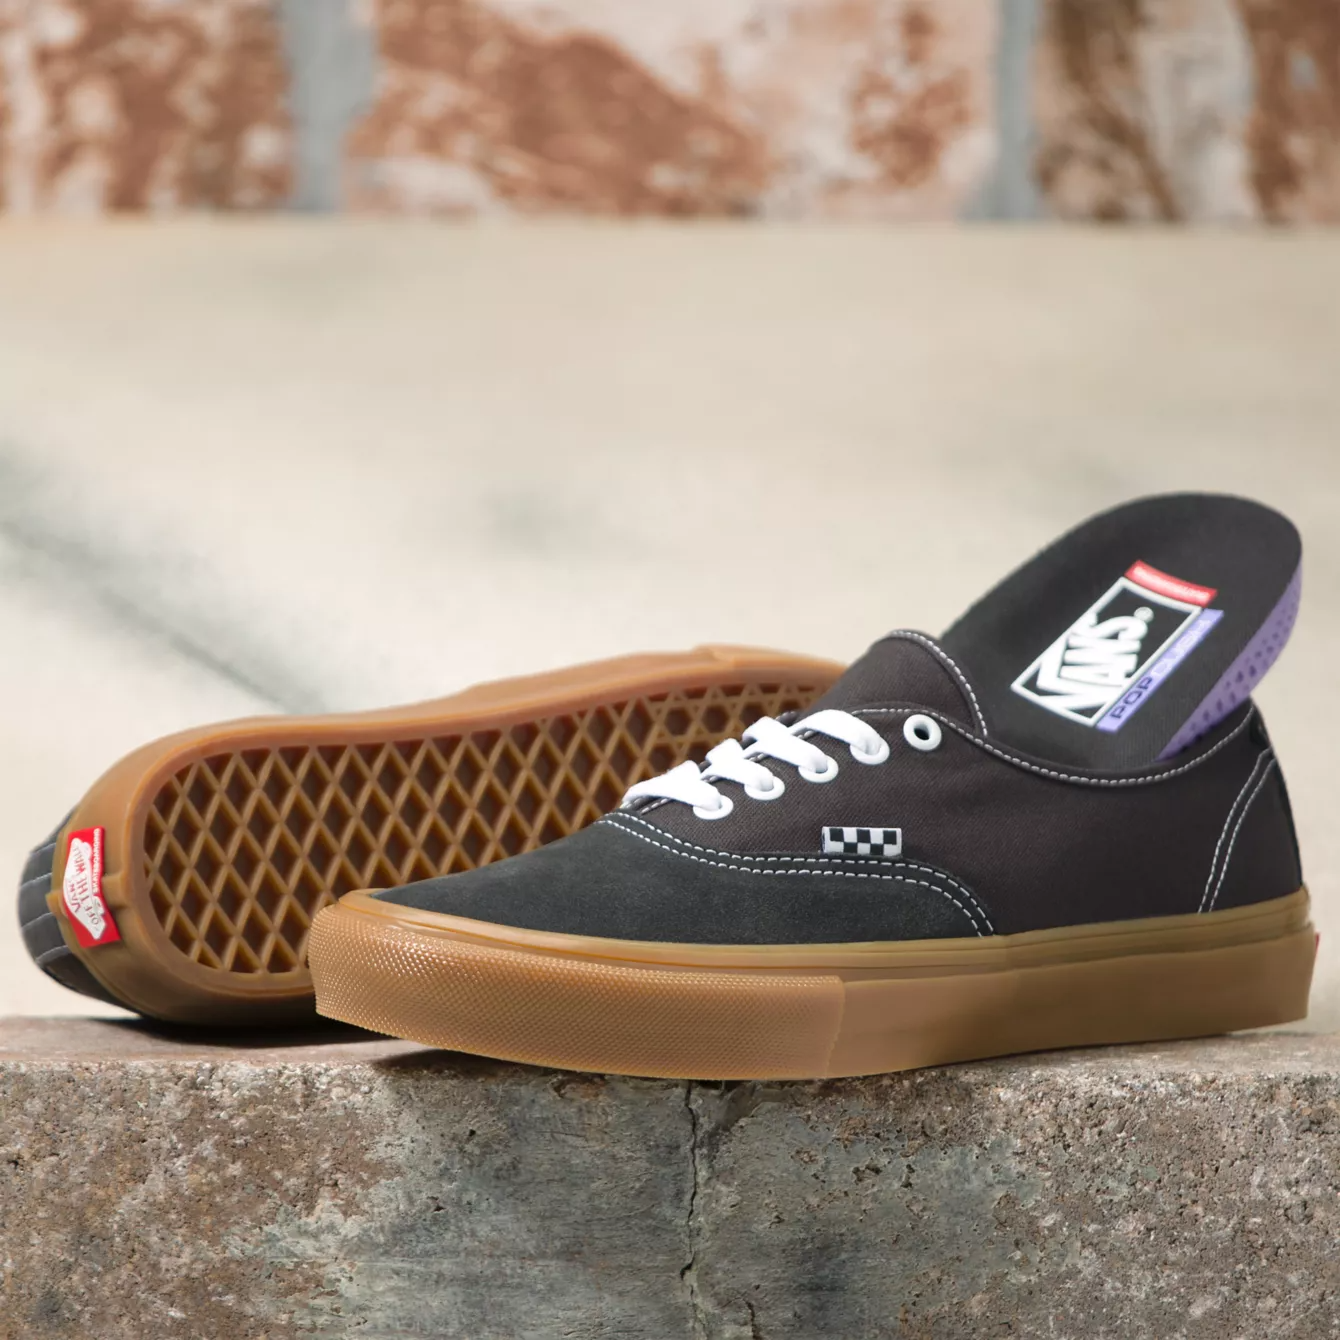 Vans Skate Authentic Shoes - Raven/Gum